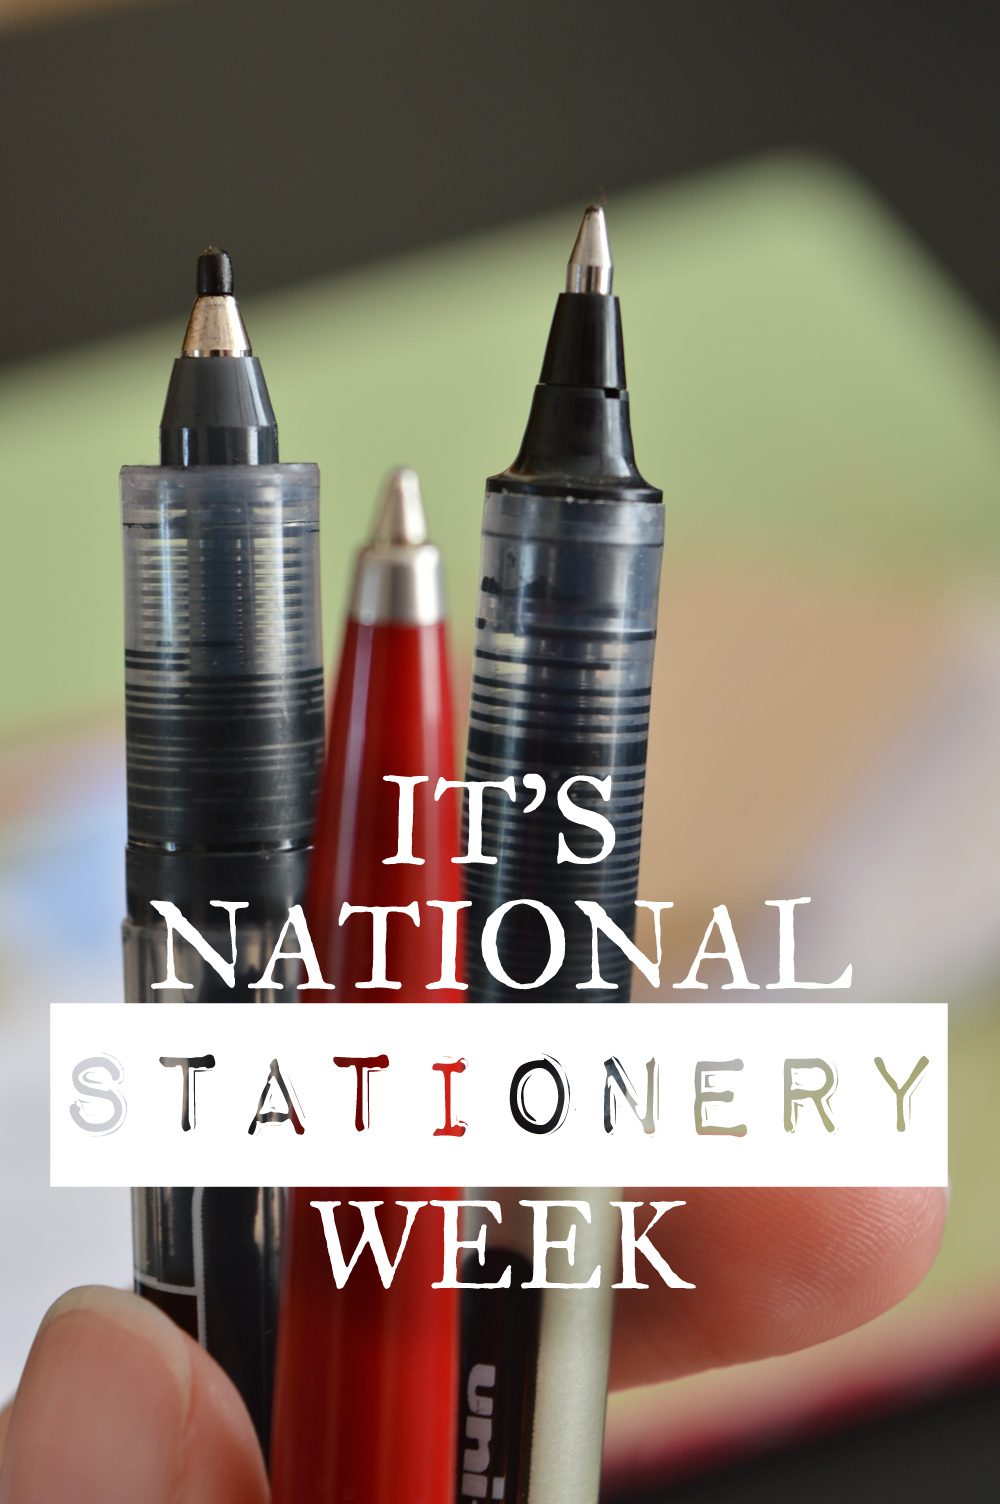 Celebrate National Stationery Week #stationeryaddict